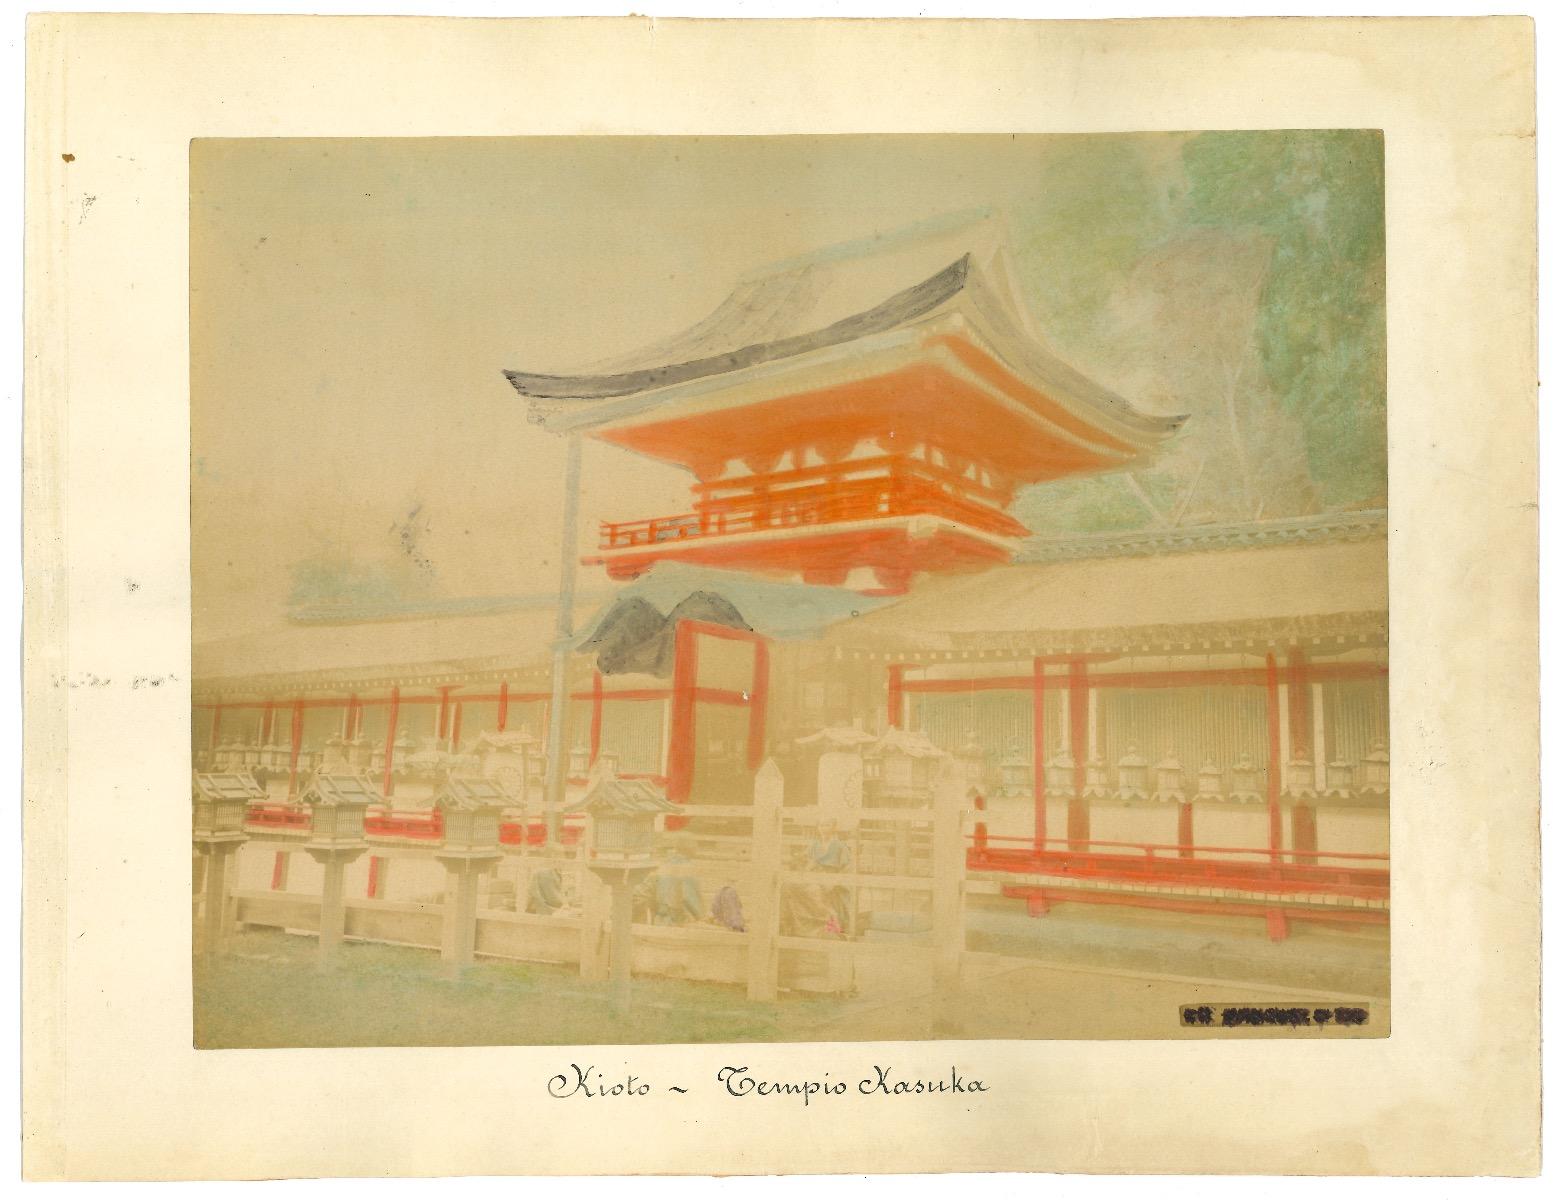 Unknown Landscape Photograph - Ancient View of Kyoto - Original Albumen Print - 1880s/90s